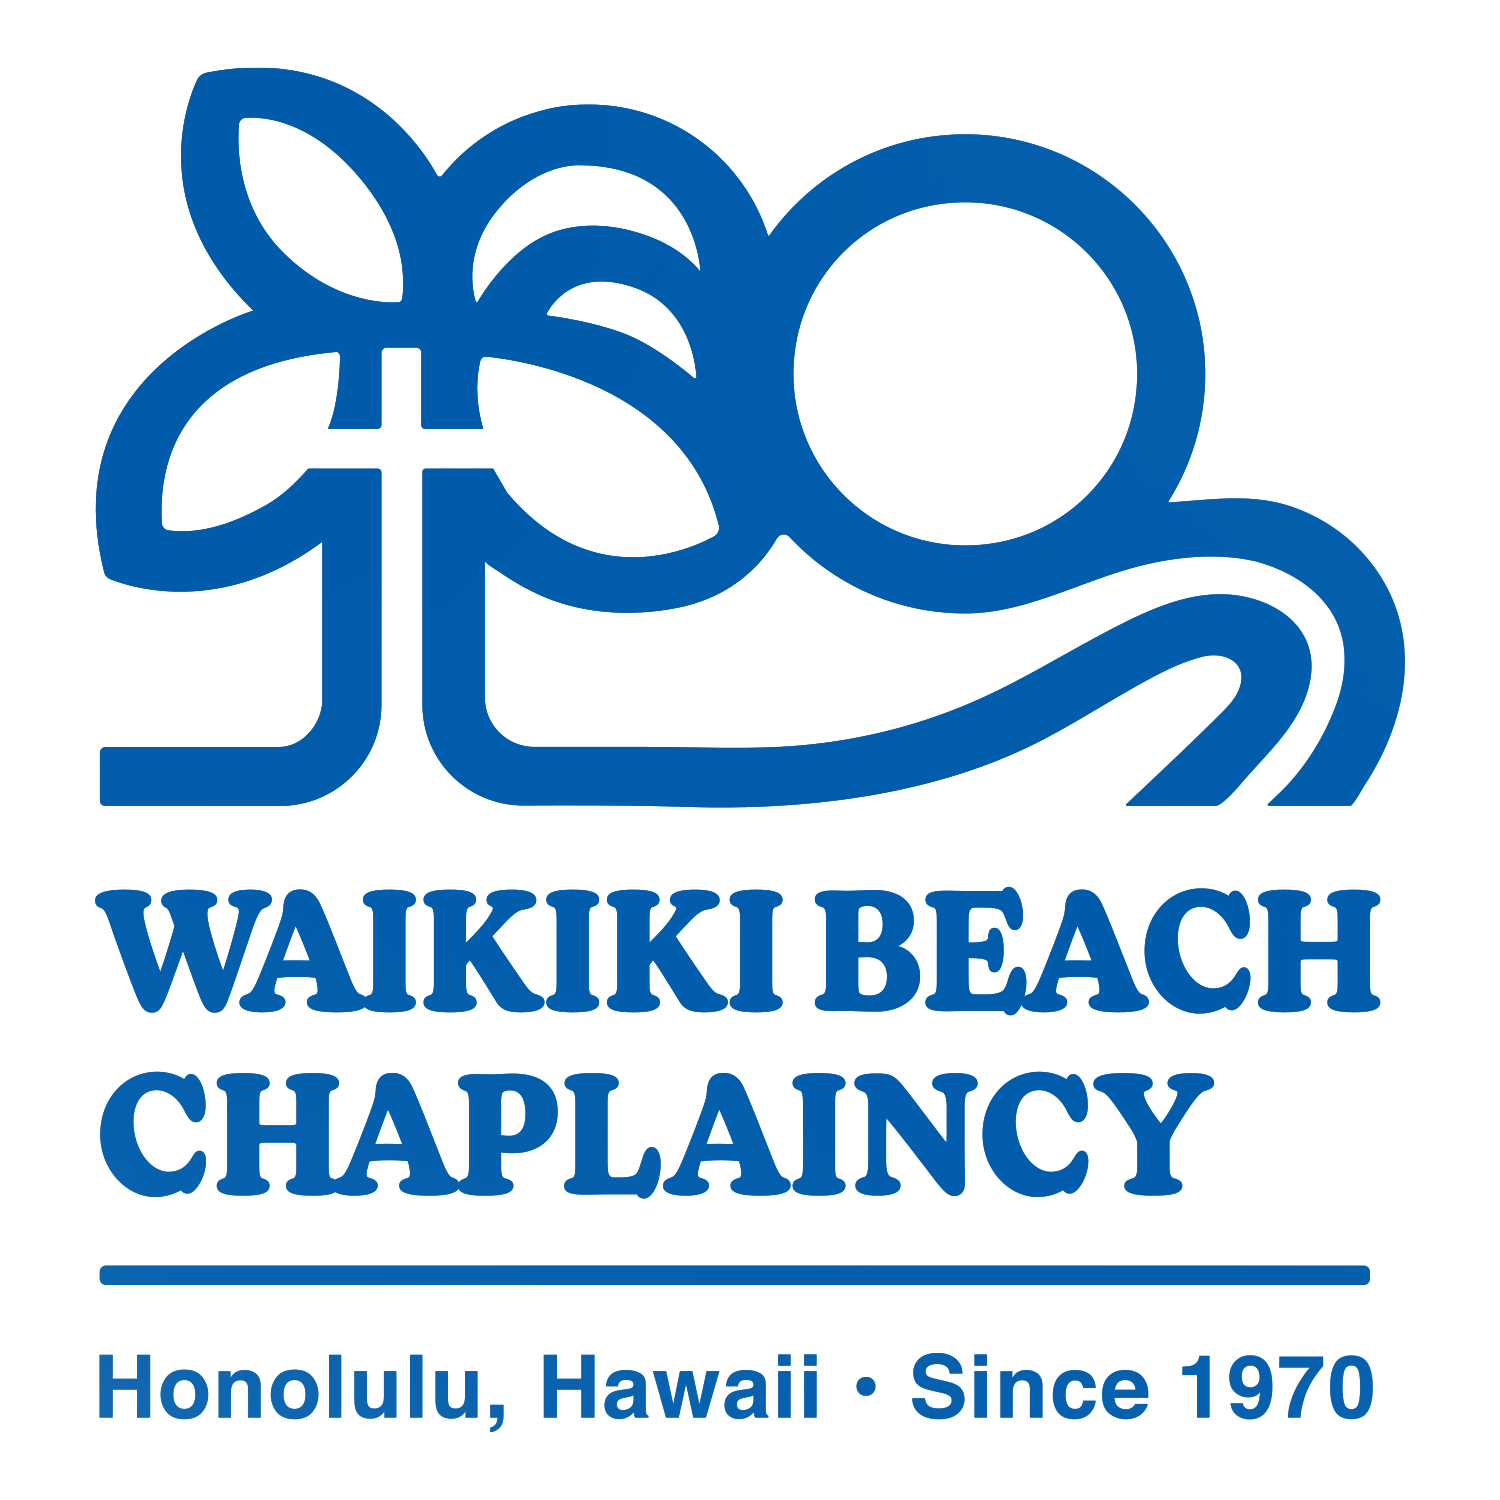 Waikiki Beach Church